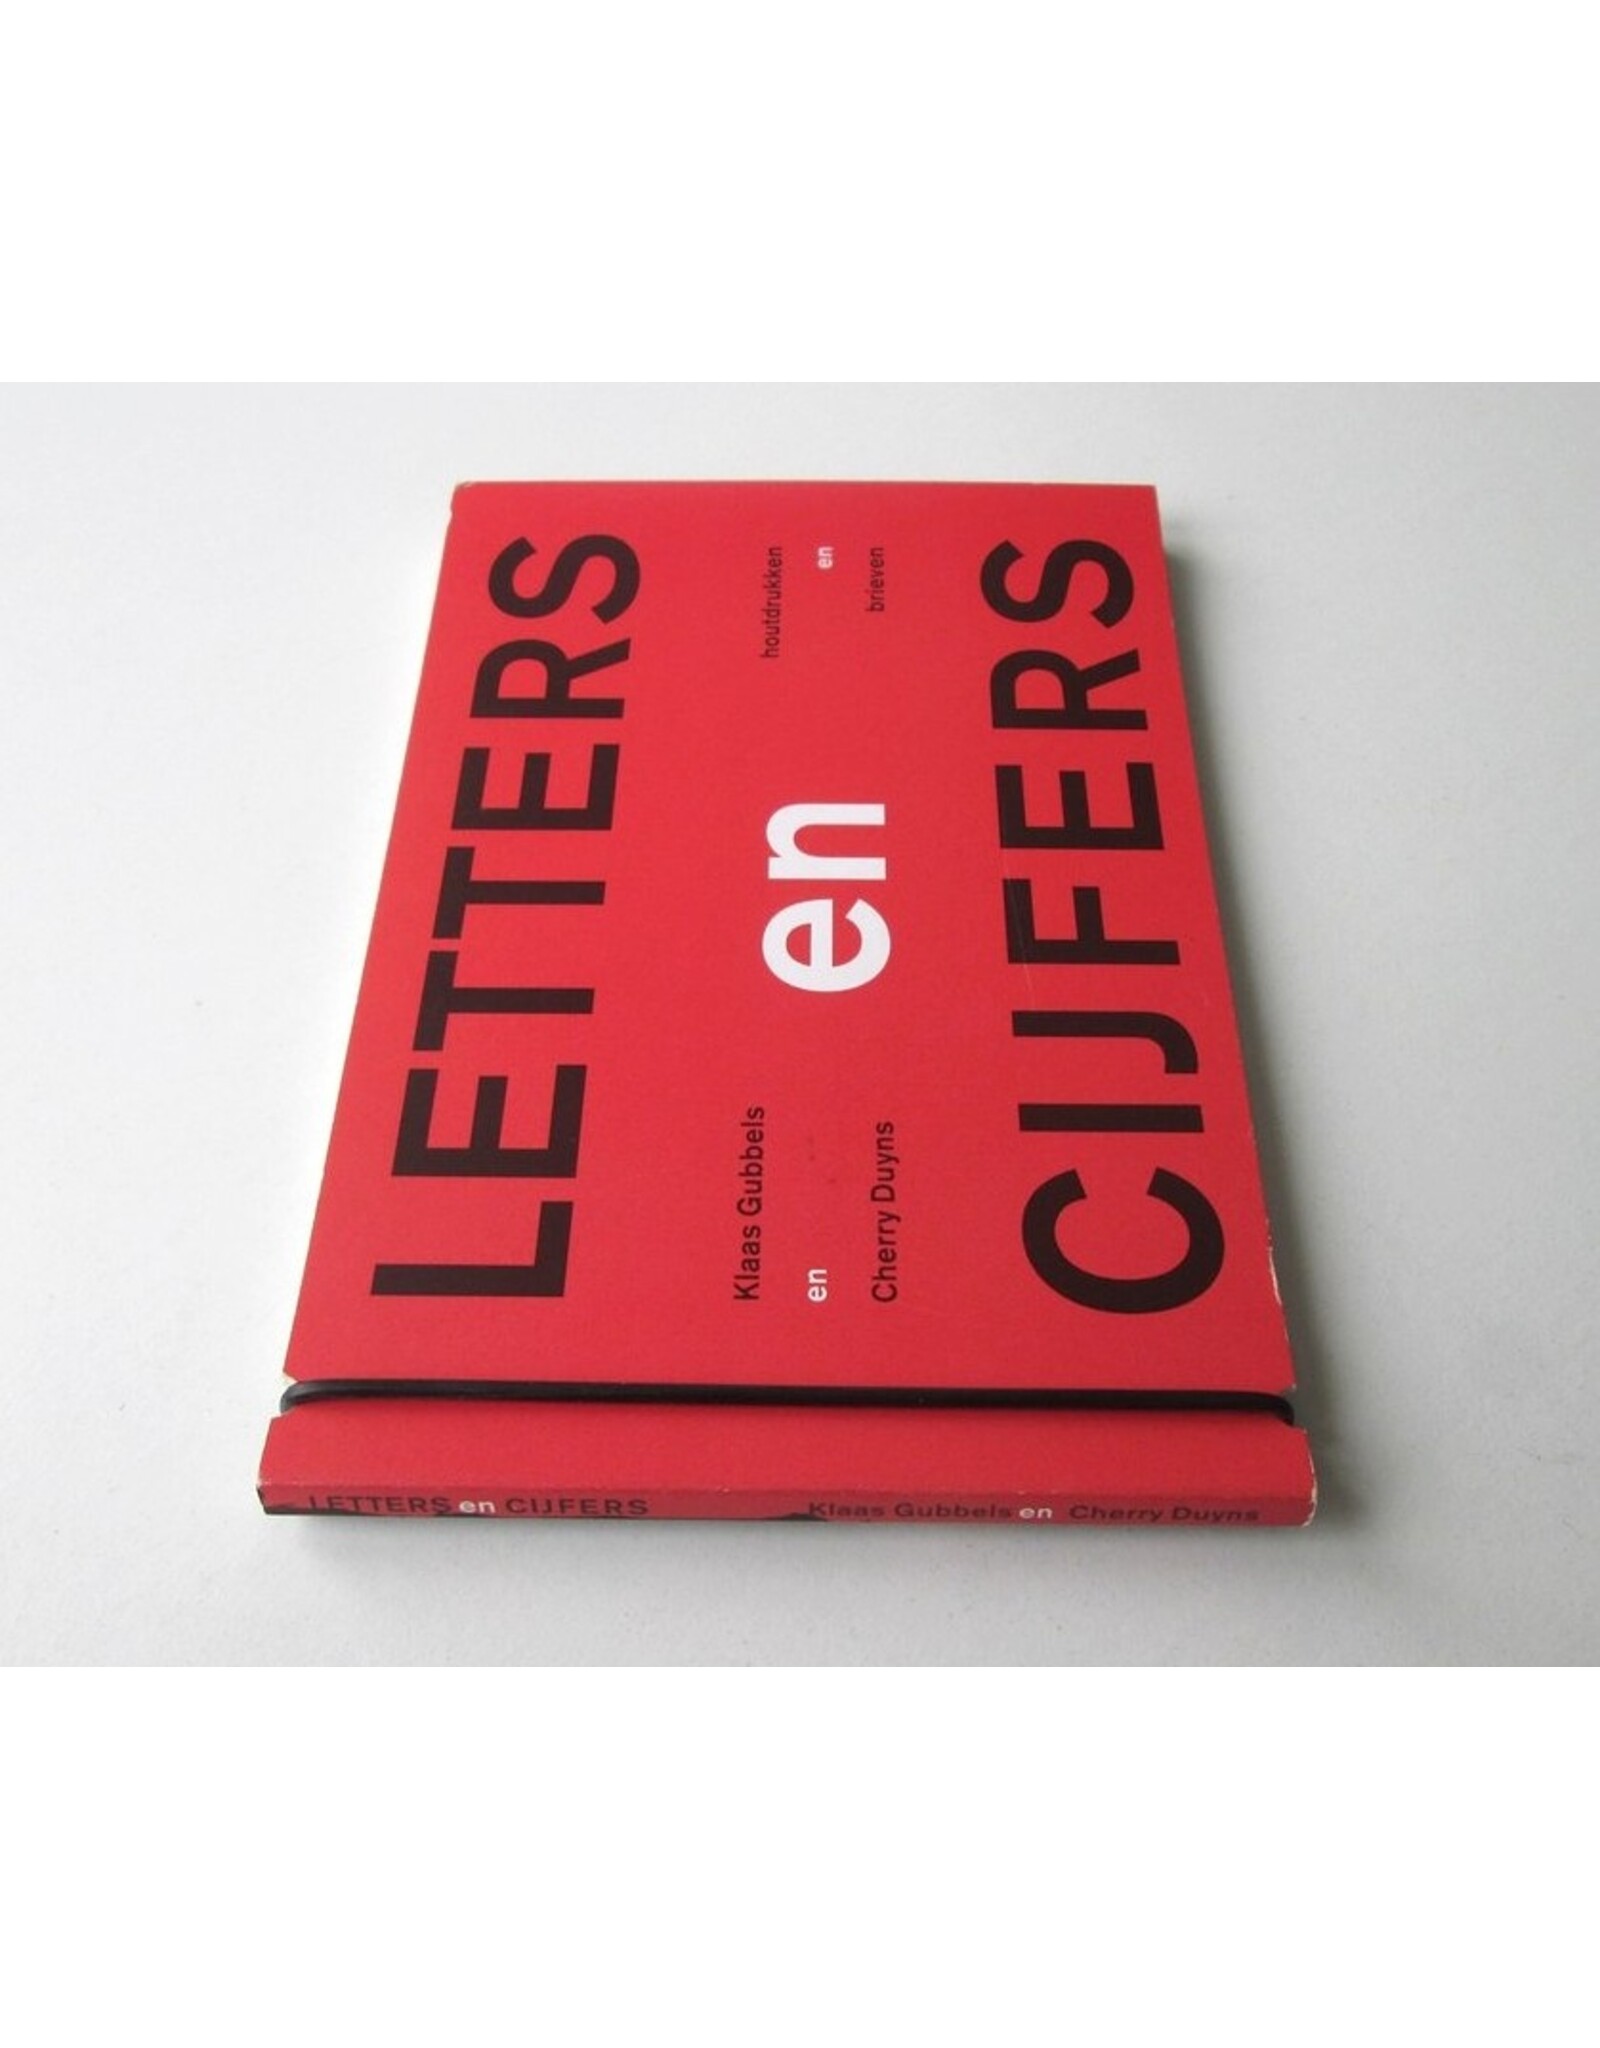 Klaas Gubbels & Cherry Duyns - Letters en Cijfers: Houtdrukken en brieven